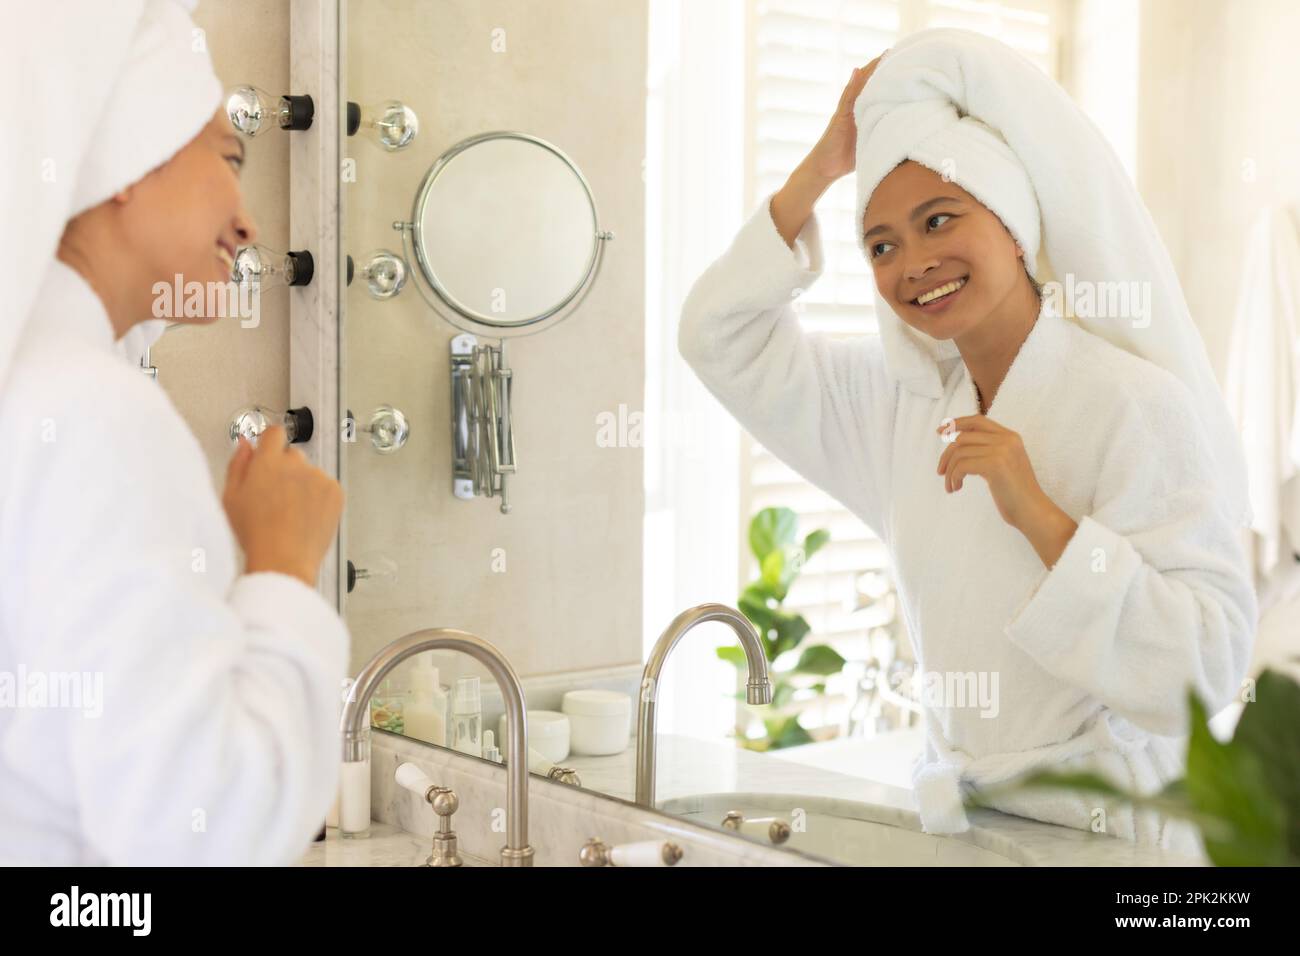 Bonne femme asiatique portant une serviette sur la tête et regardant dans le miroir de salle de bains Banque D'Images